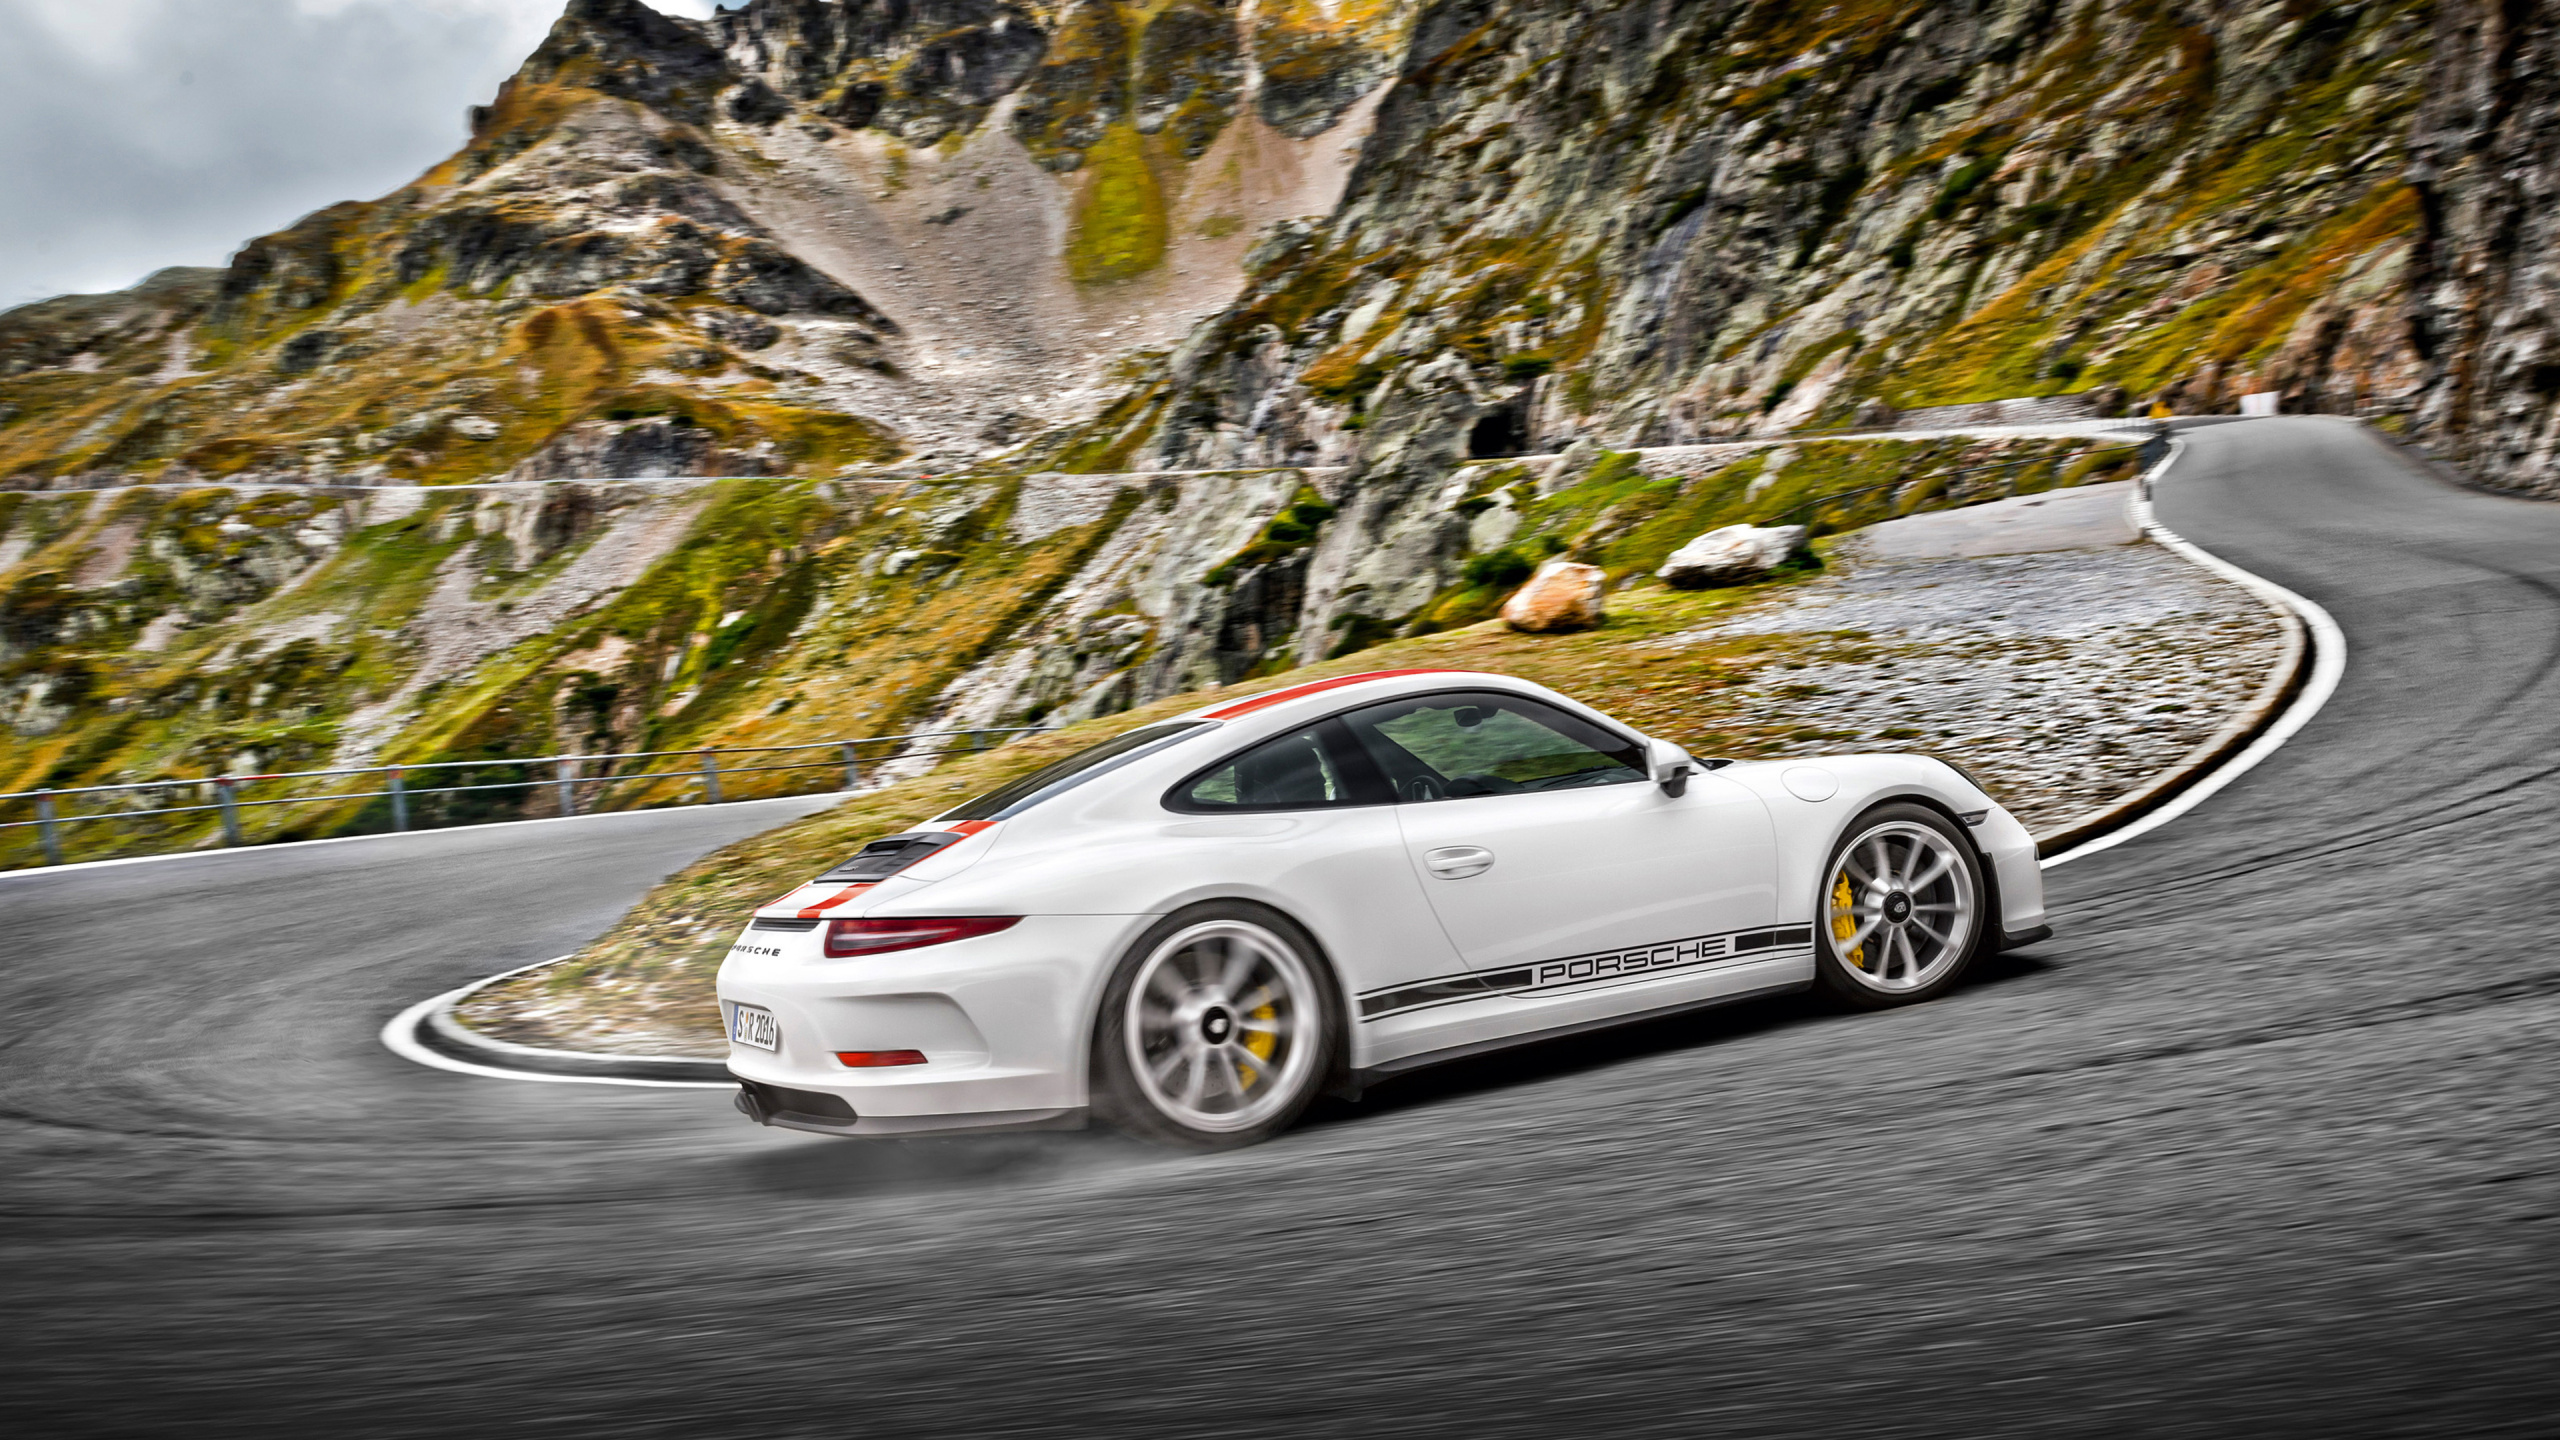 Porsche 911 Blanche Sur Route. Wallpaper in 2560x1440 Resolution